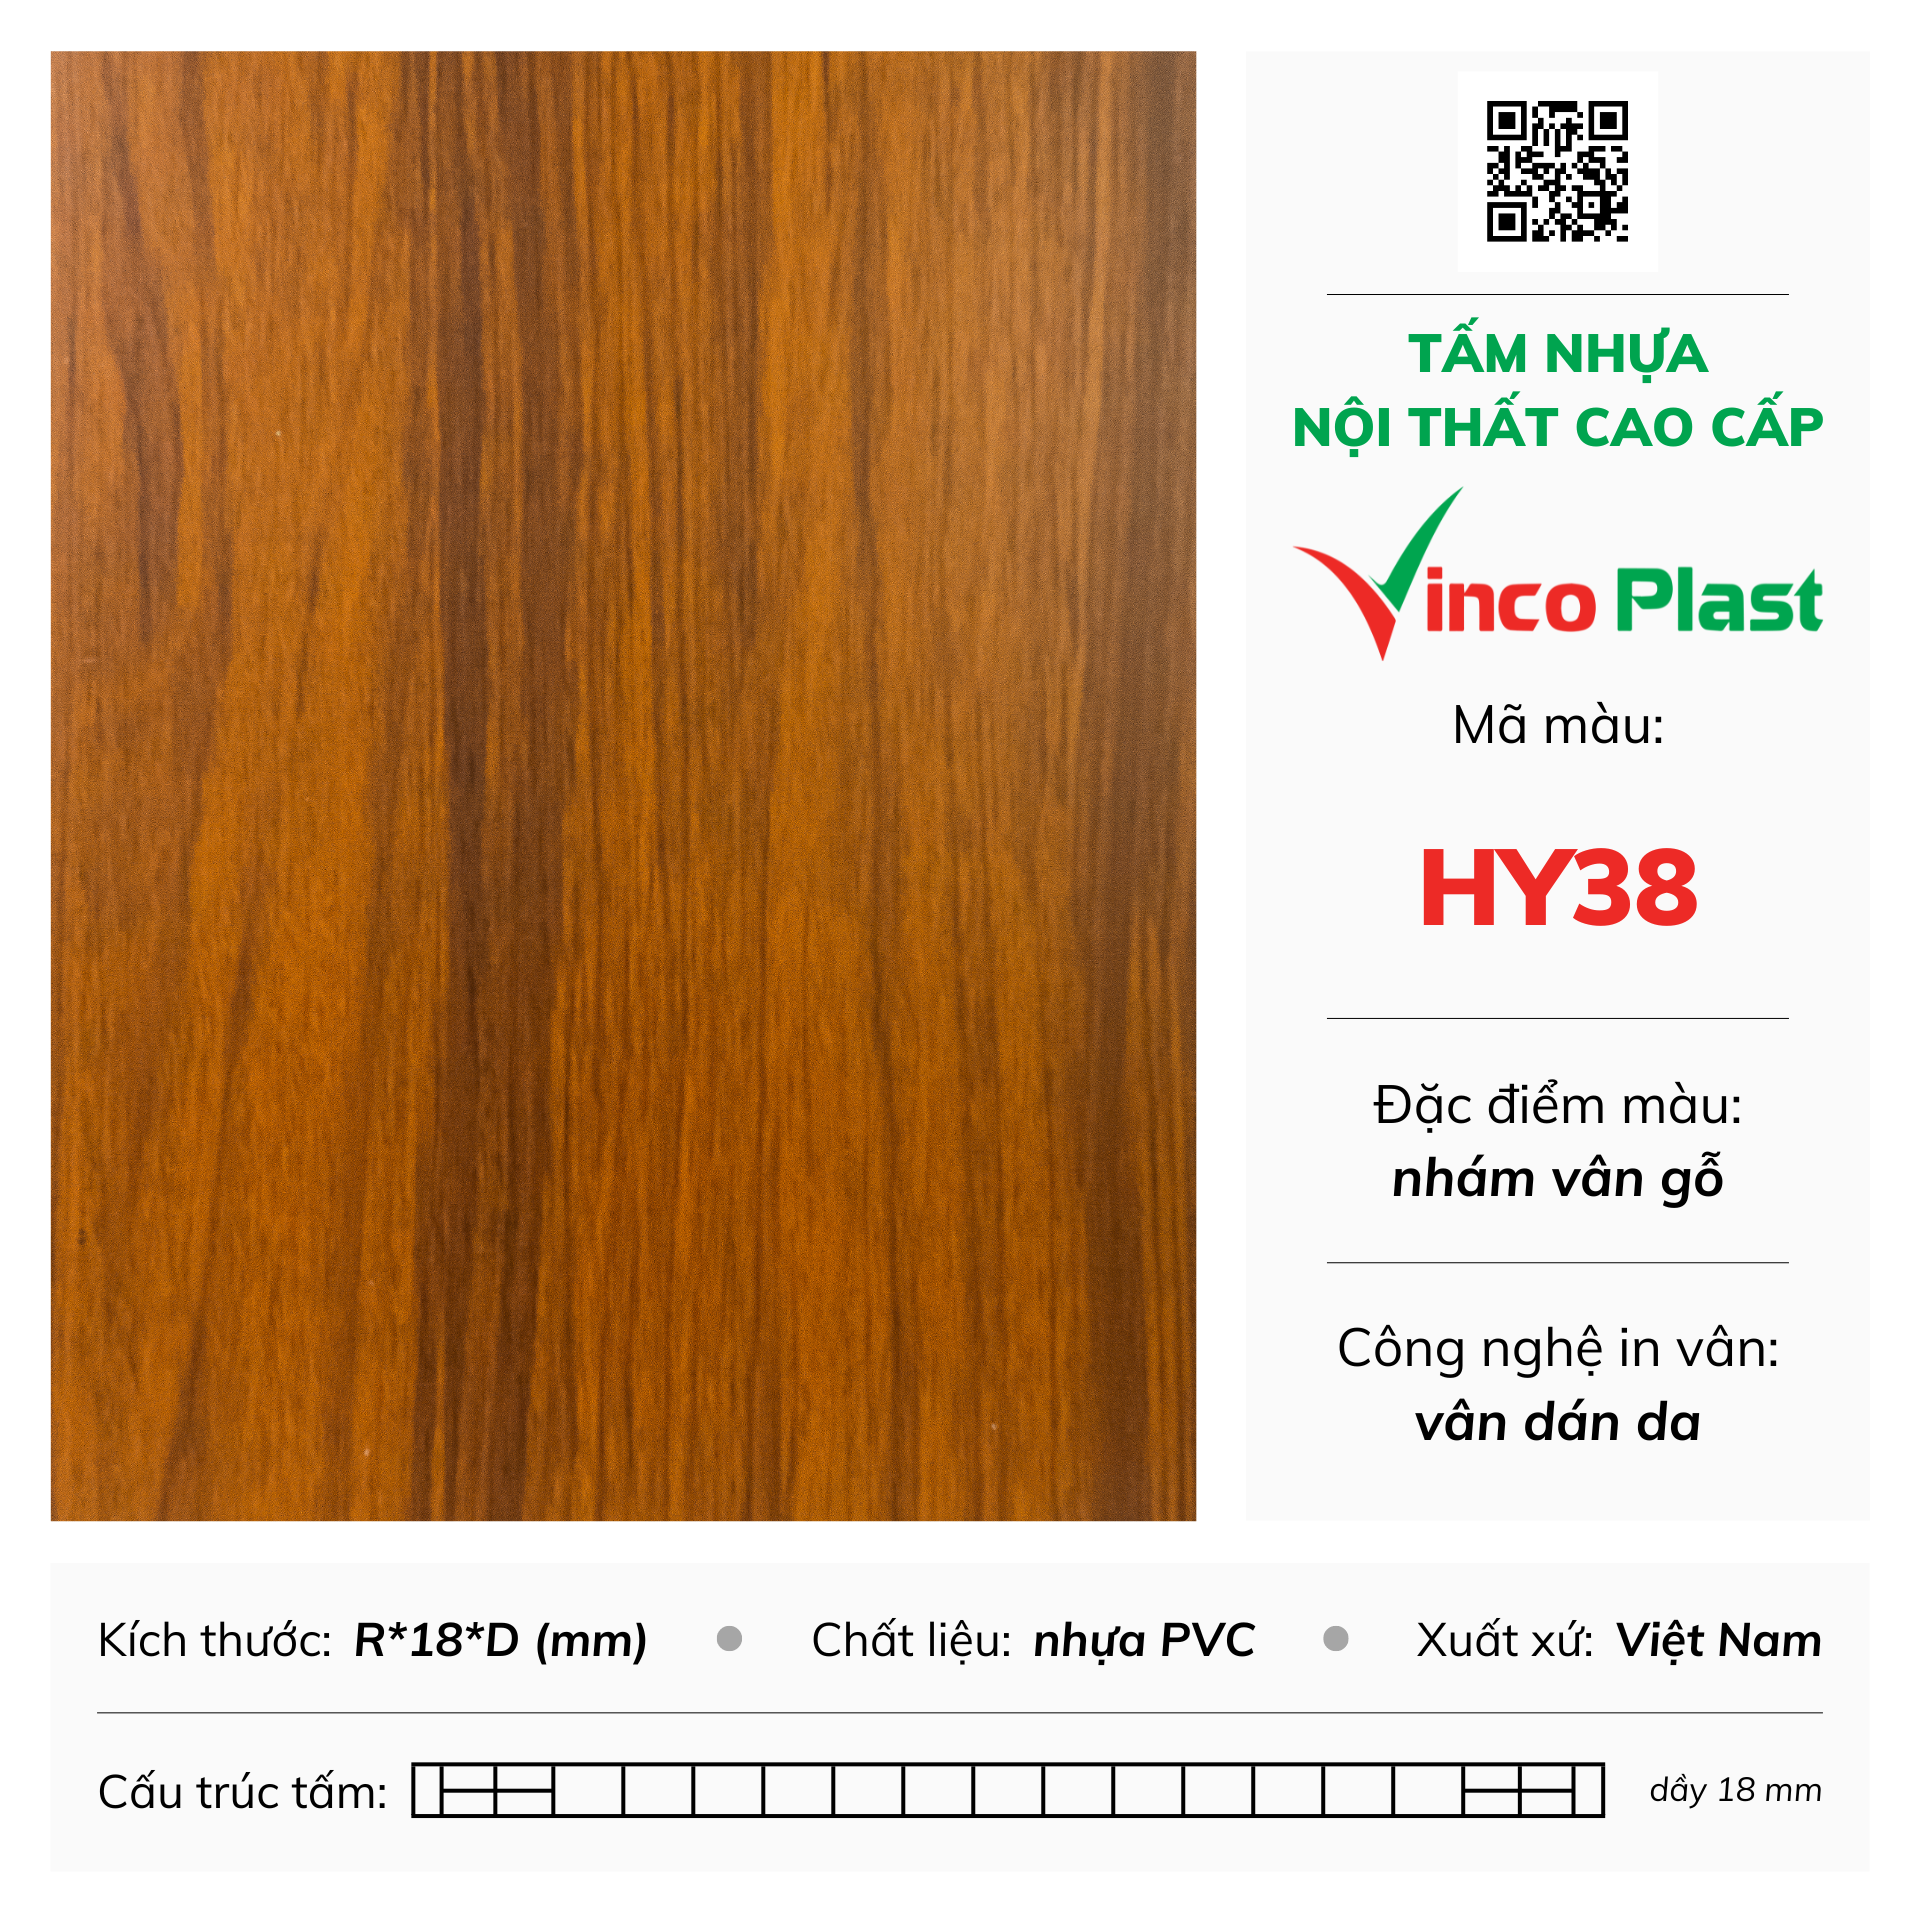 Tấm nhựa nội thất cao cấp Vincoplast màu hy38